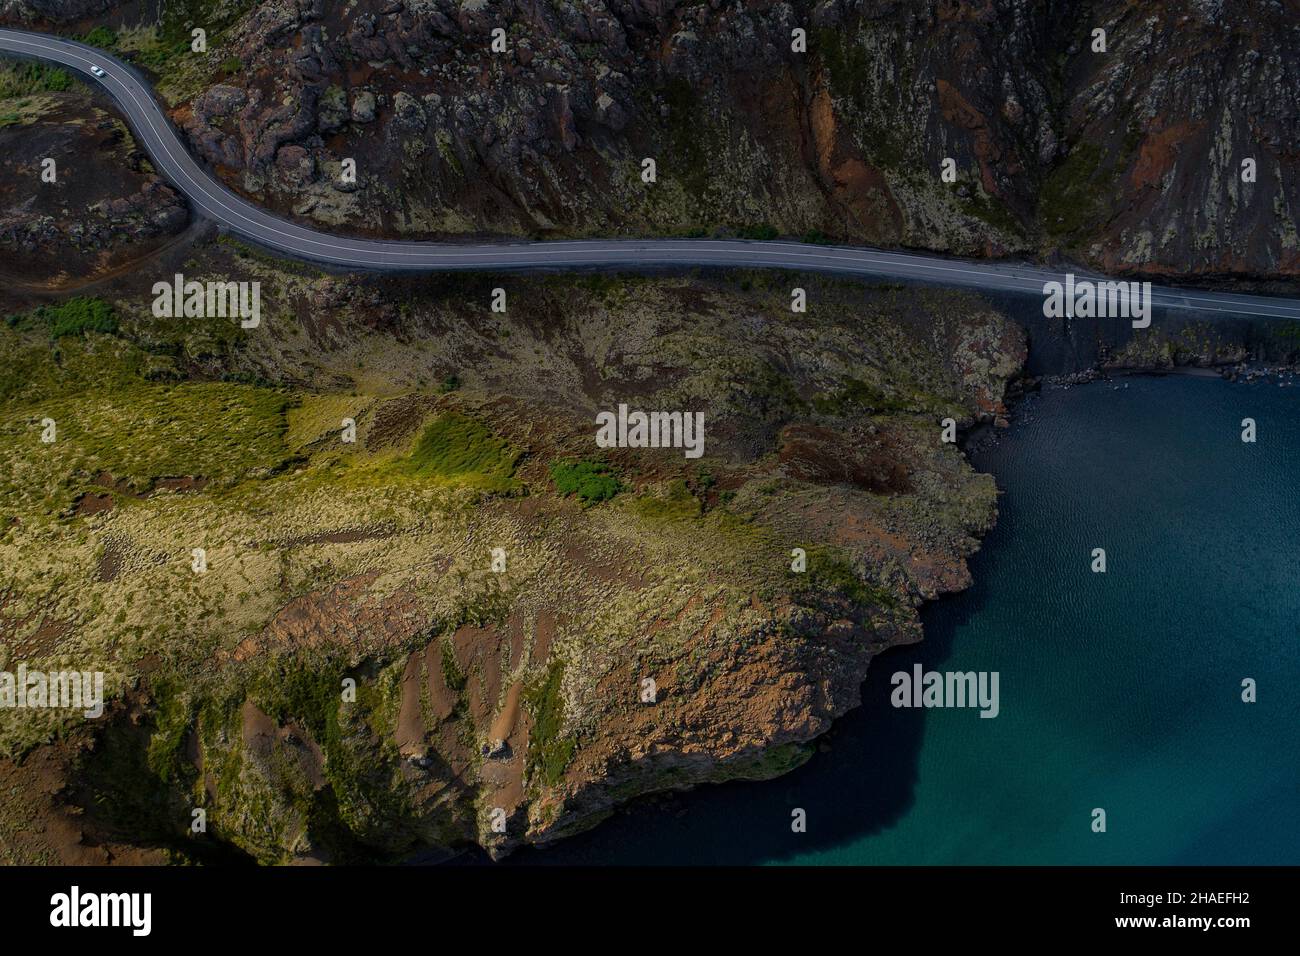 Vue aérienne d'une chaîne de montagnes en Islande, terrain extraterrestre avec une route asphaltée qui s'étend entre une montagne massive et un lac Banque D'Images